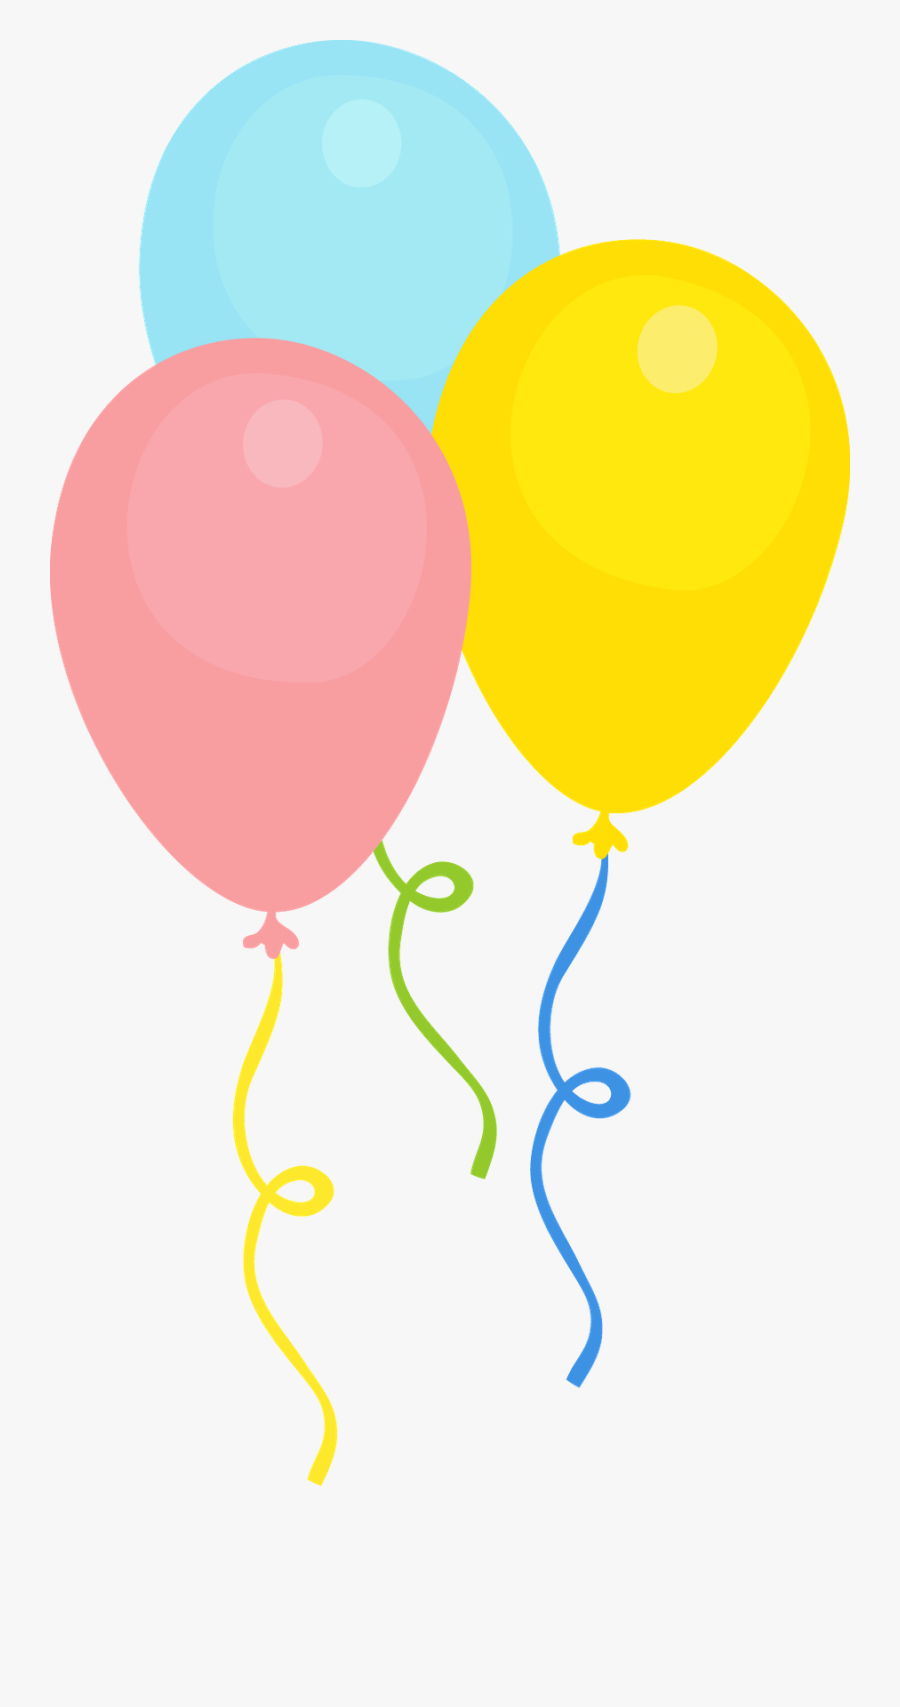 Minus - Balões De Festa Desenho, Transparent Clipart